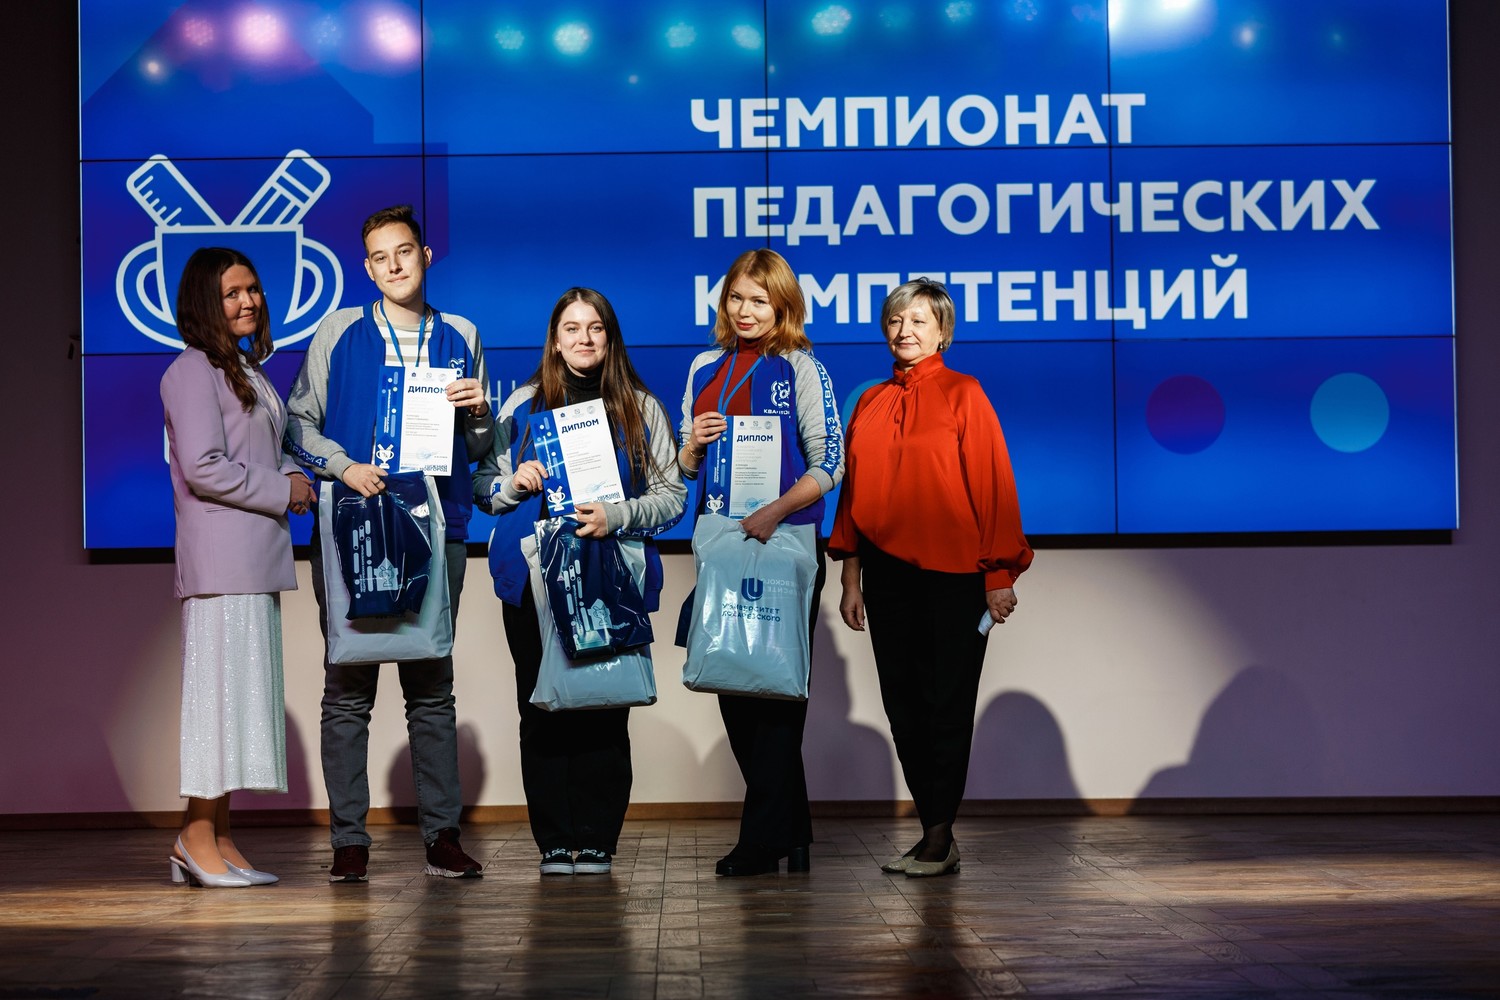 Команда «Кванториума» г. Кирова стала победителем Всероссийского  Чемпионата педагогических компетенций